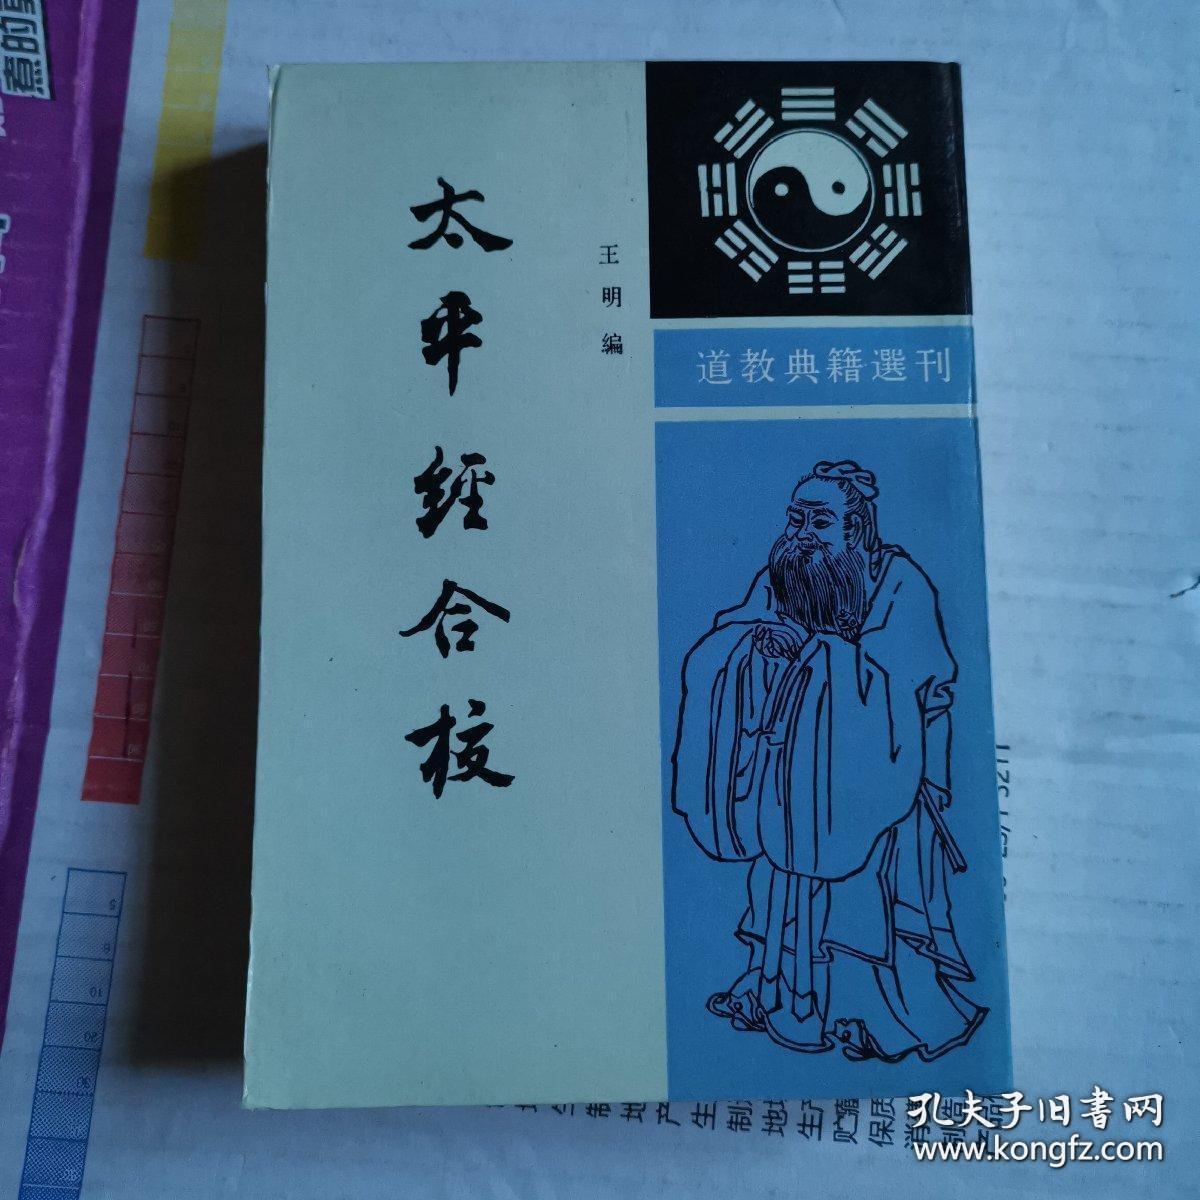 《太平经合校》(1992年版。上下 全二册 中华书局。是中国历史文化中最重要的经典。因为他是东汉末年五斗米道和太平道创立道教的共同理论依据。该书的作者是三国演义中的那个于吉。道教跟道家、墨家、儒家、神仙家诸子百家等思想关系紧密。哲学、科学、修炼和宗教等方面的研究都可以参考)